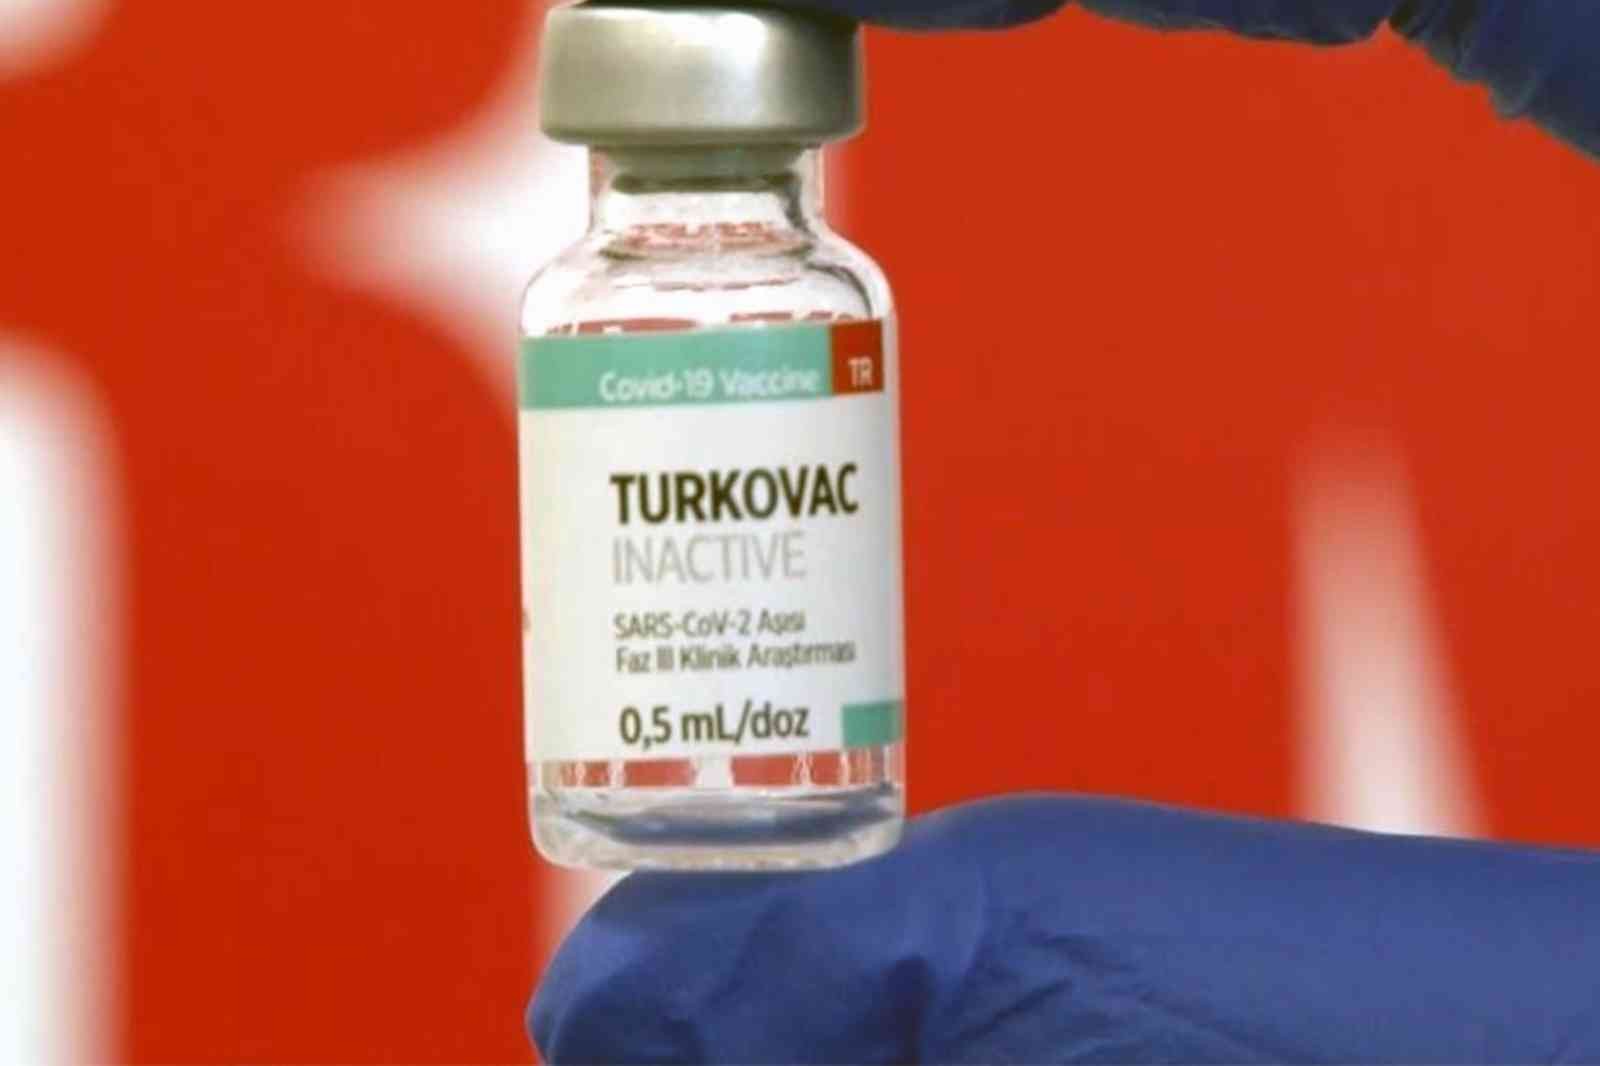 Burdur’da Turkovac aşısı yapılmaya başlanıyor #burdur